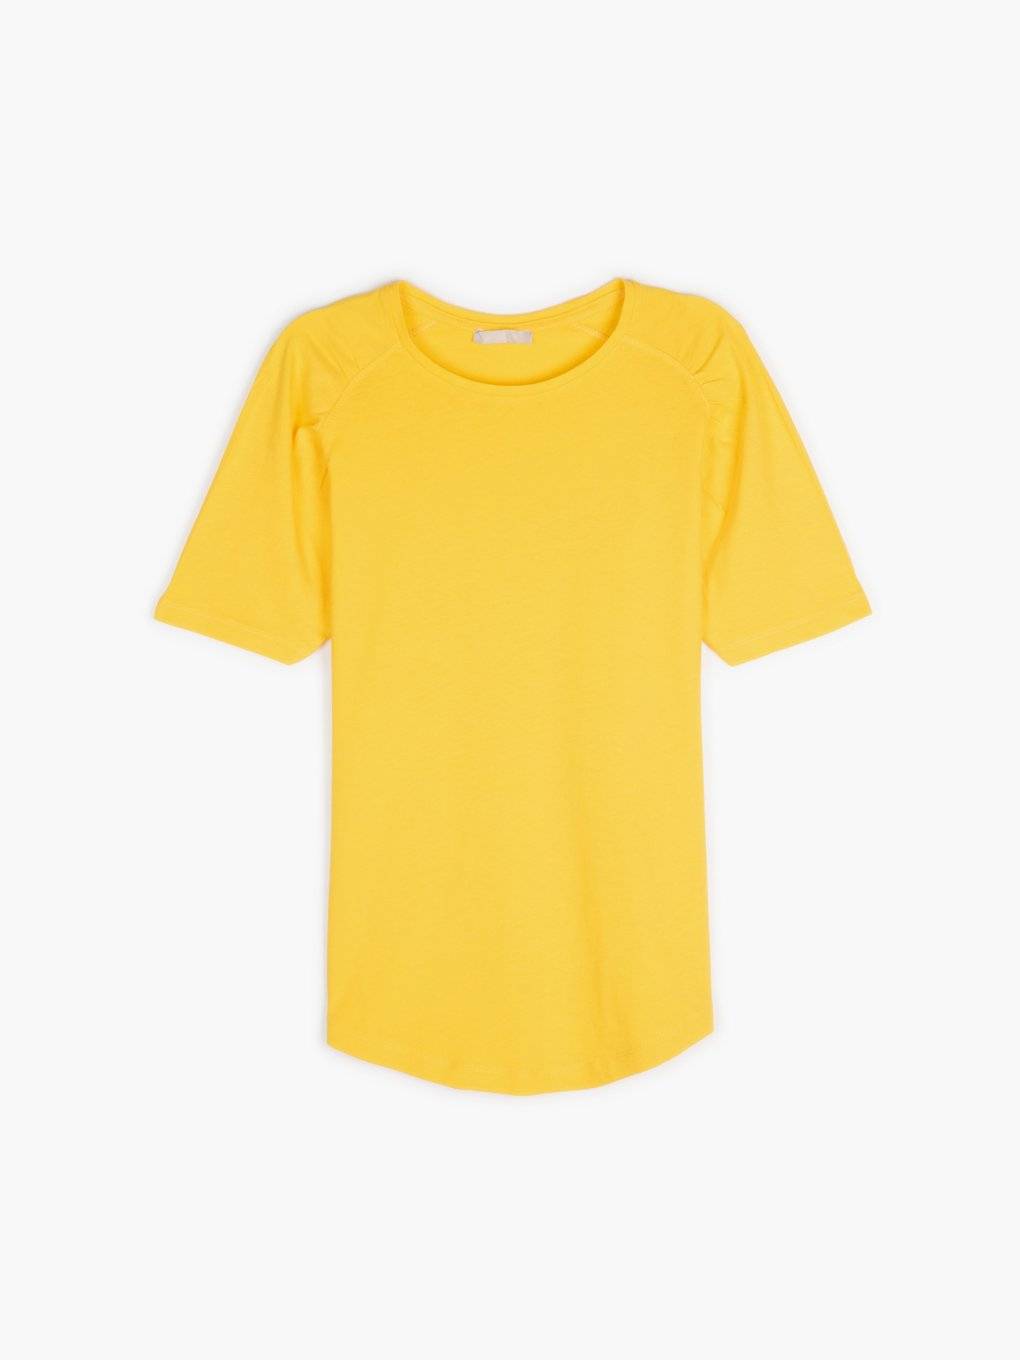 Základní bavlněné tričko raglánového střihu